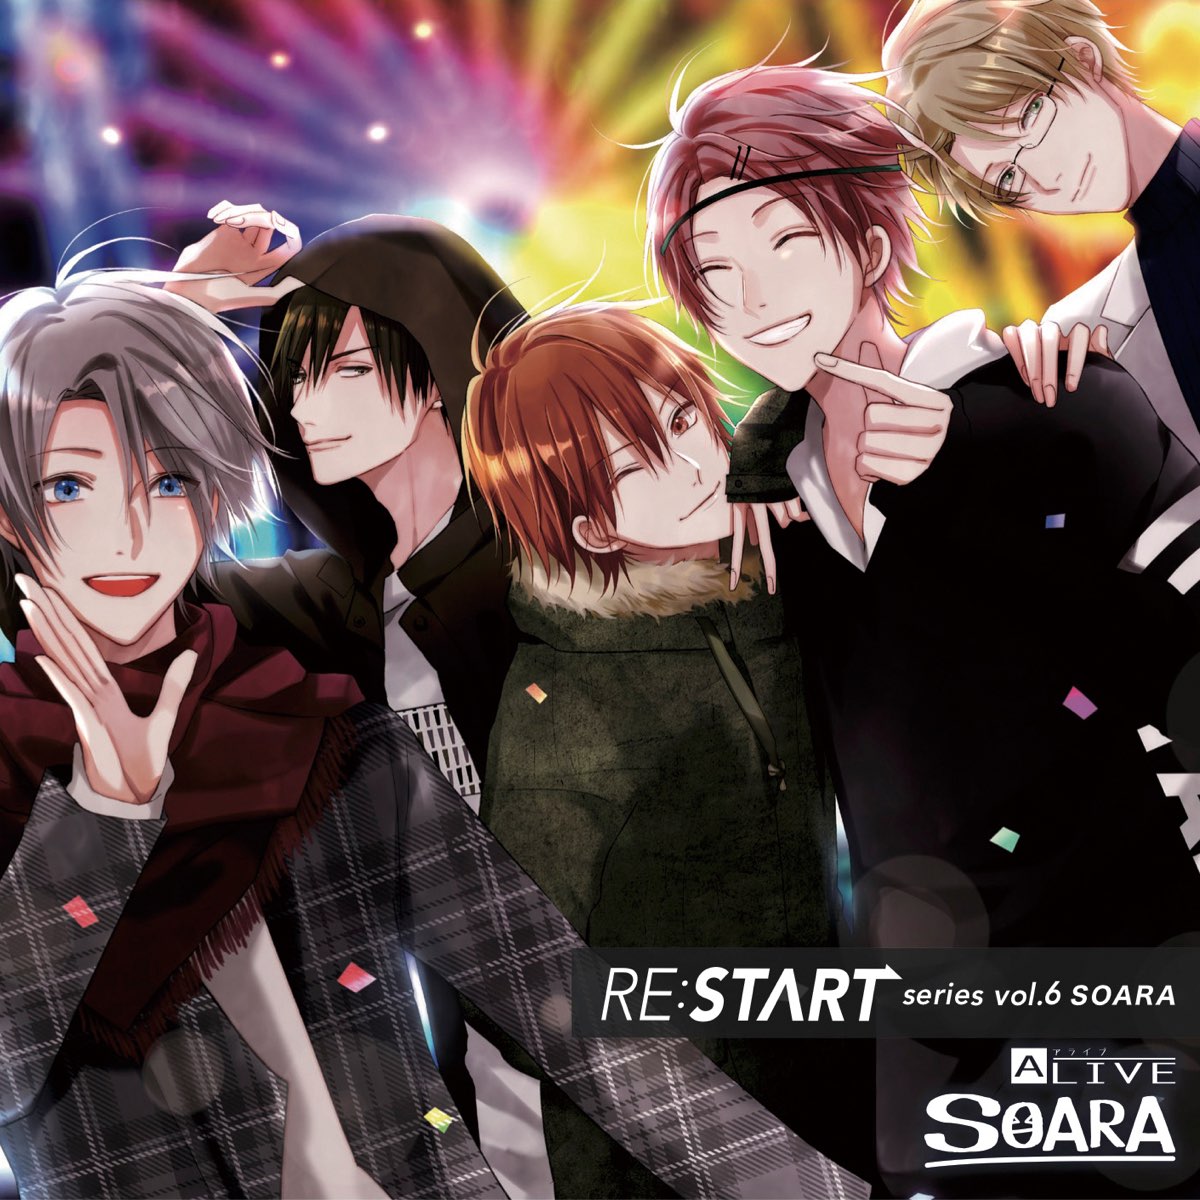 大人気 SOARA ツキプロ シリーズ④ SOARA RE:START 「RE:START」 ALIVE